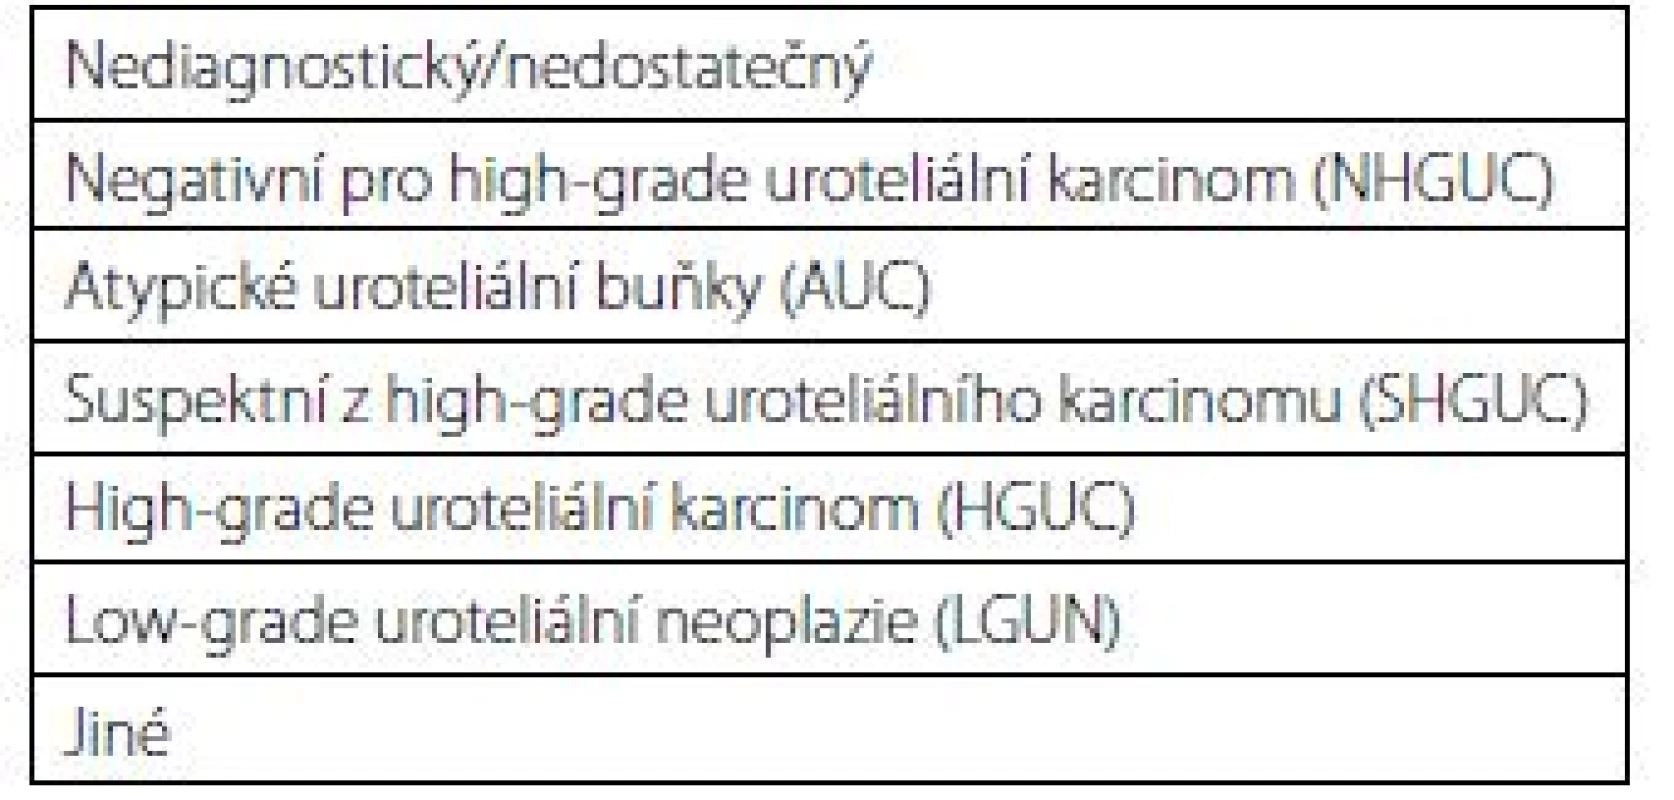 Pařížská klasifikace pro hodnocení močových
cytologii (diagnostické kategorie)<br>
Tab. 1. The Paris system for reporting
urinary cytology
(diagnostic categories)